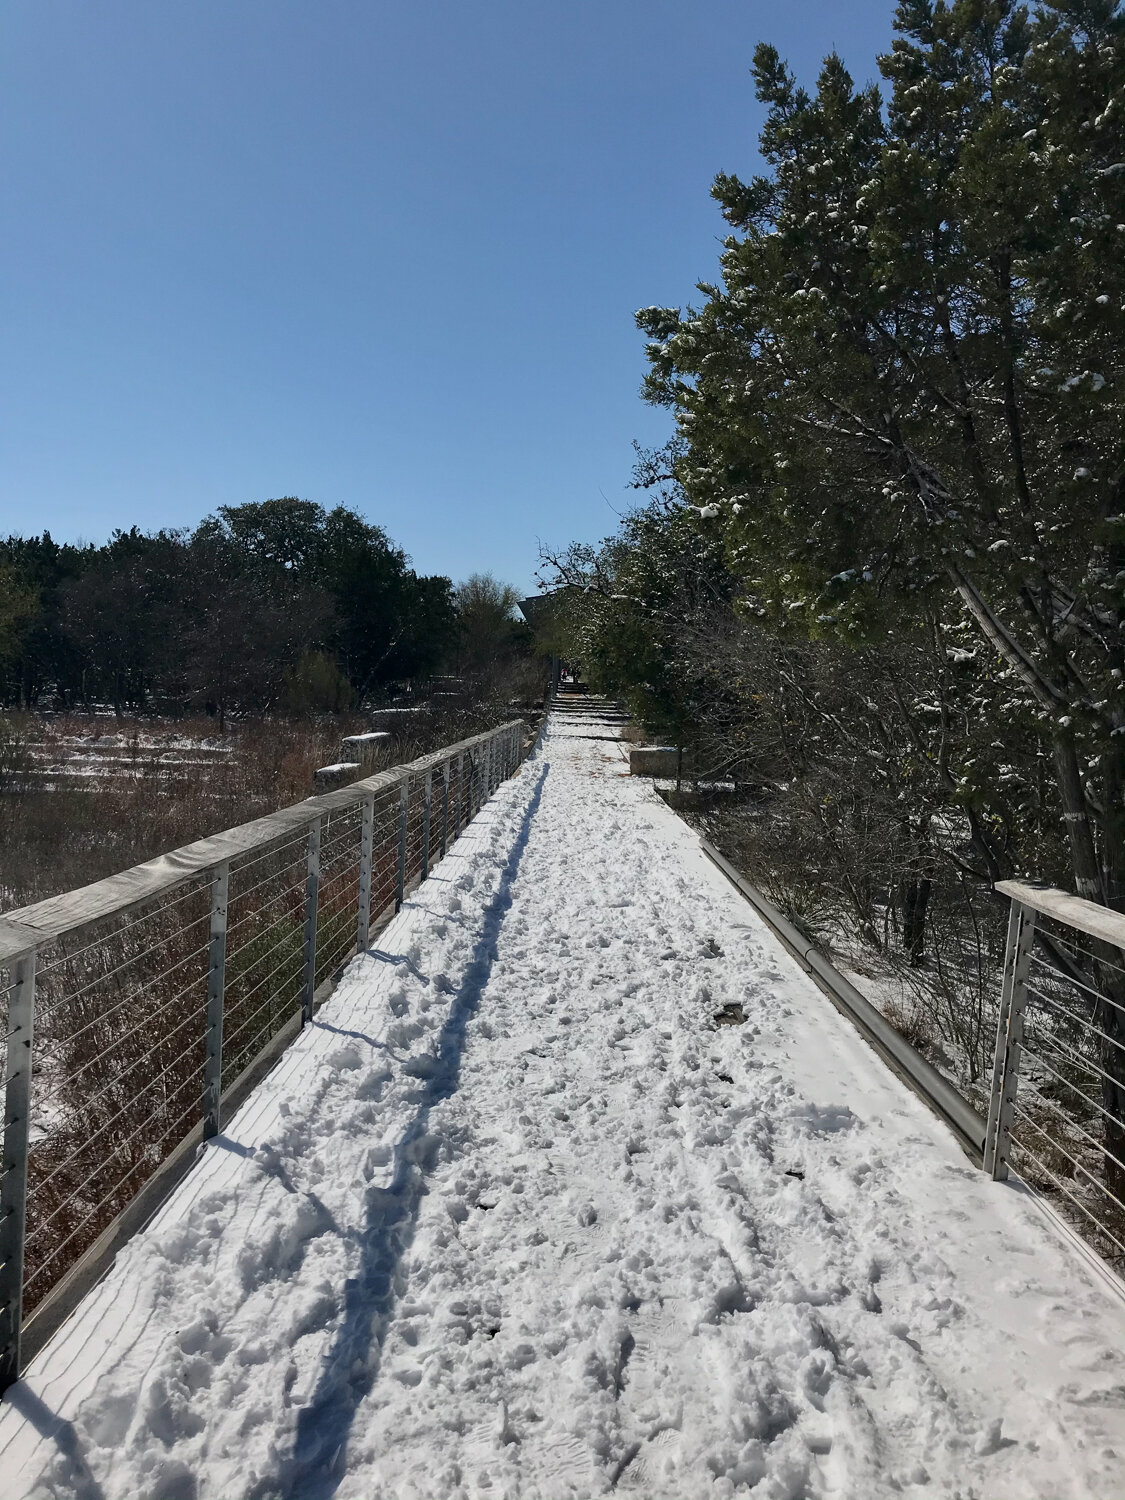 Urban Ecology Center boardwalk in snow